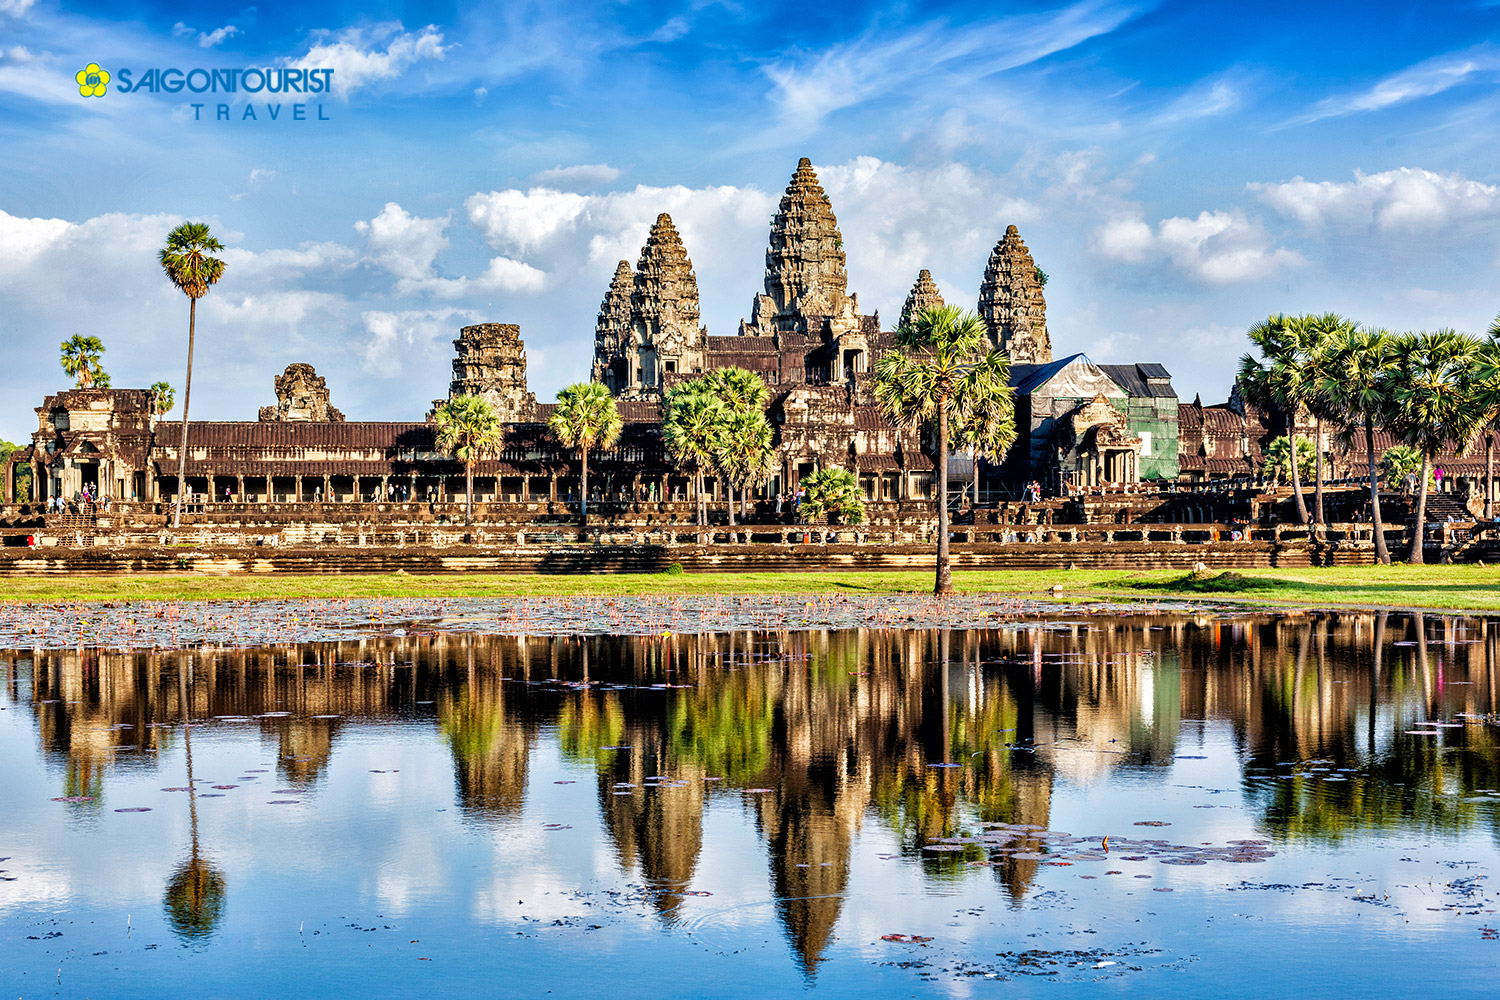 Du lịch Campuchia [Siem Reap - Phnom Penh] khách sạn 4 sao